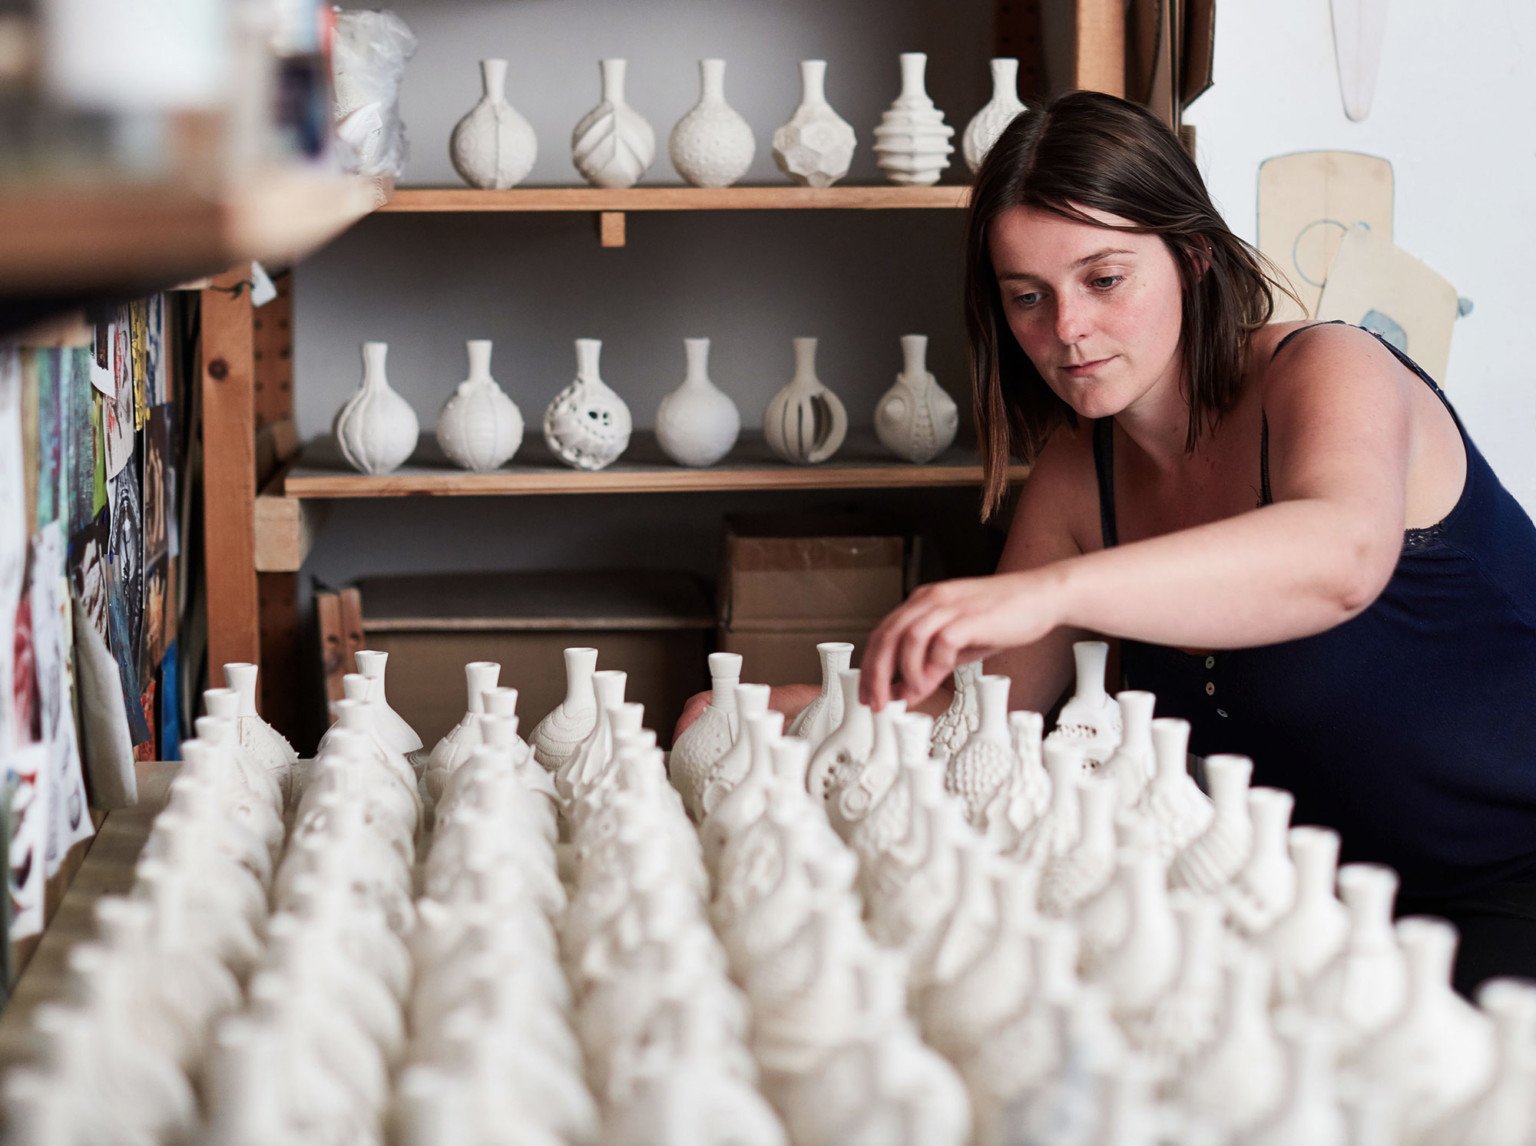 AnnaWhitehouse 8 cerámica arcilla artesanía reto arte 100días creatividad estimulante